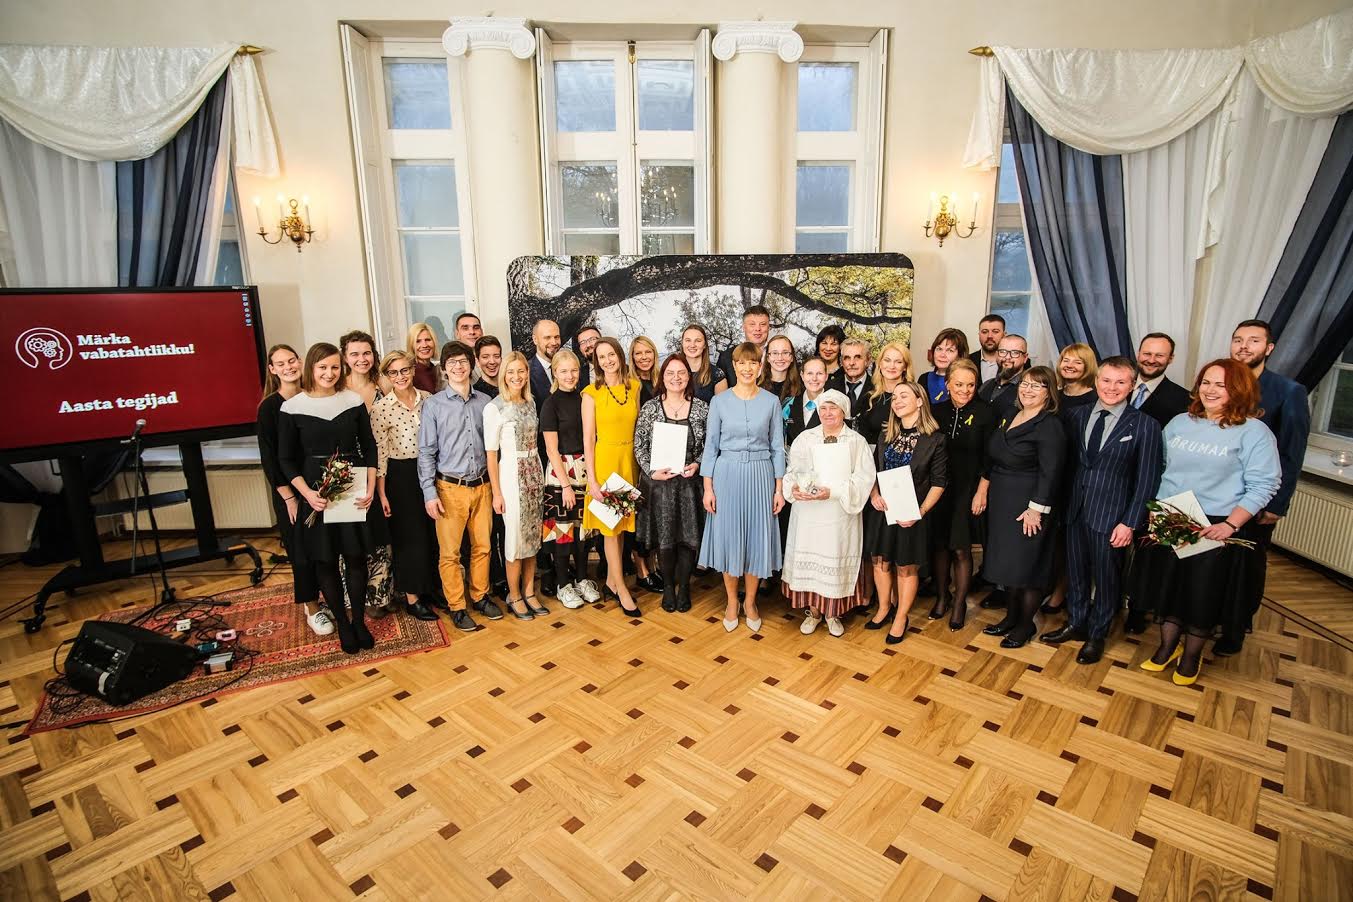 Aasta vabatahtlikud ja kodanikuühiskonna aasta tegijad ning ürituse patroon president Kersti Kaljulaid Saku mõisas toimunud tunnustusüritusel. Foto: MATTIAS TAMMET